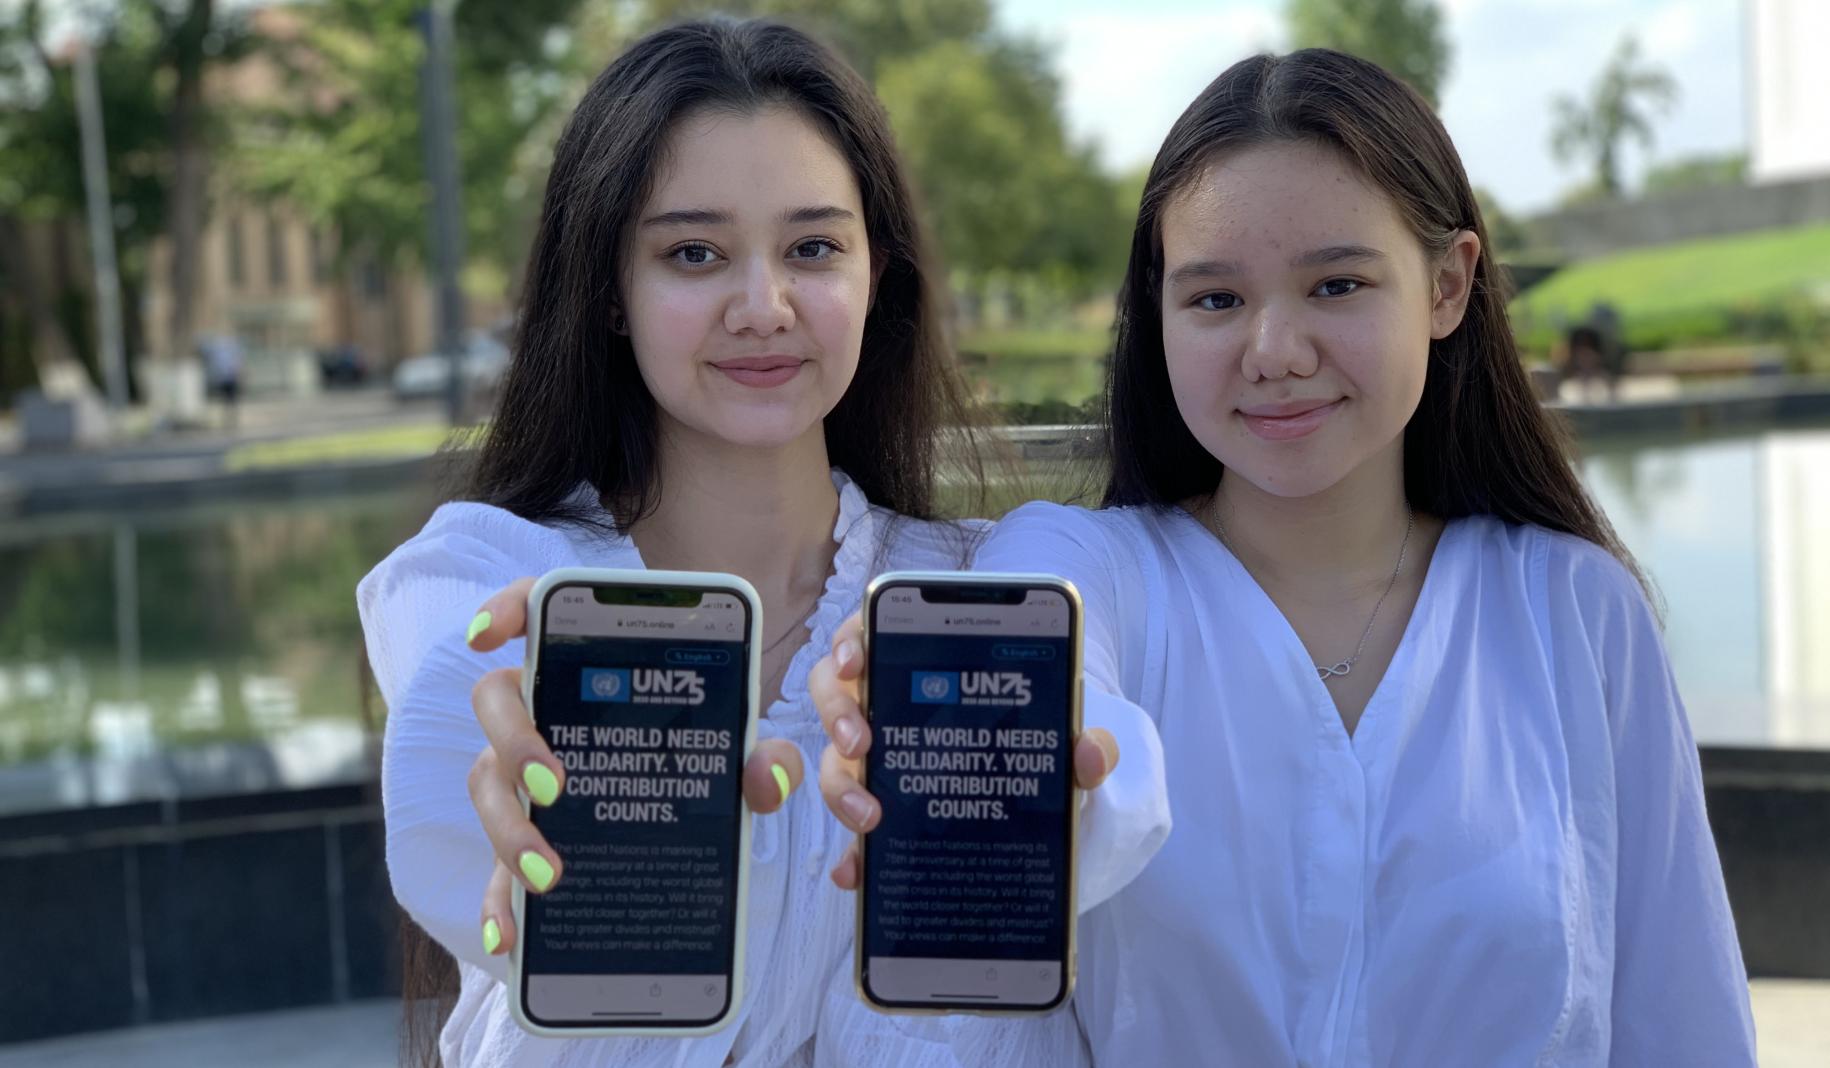 Dos chicas adolescentes levantan sus teléfonos móviles directamente hacia la cámara mientras muestran la encuesta de UN75 en la pantalla.